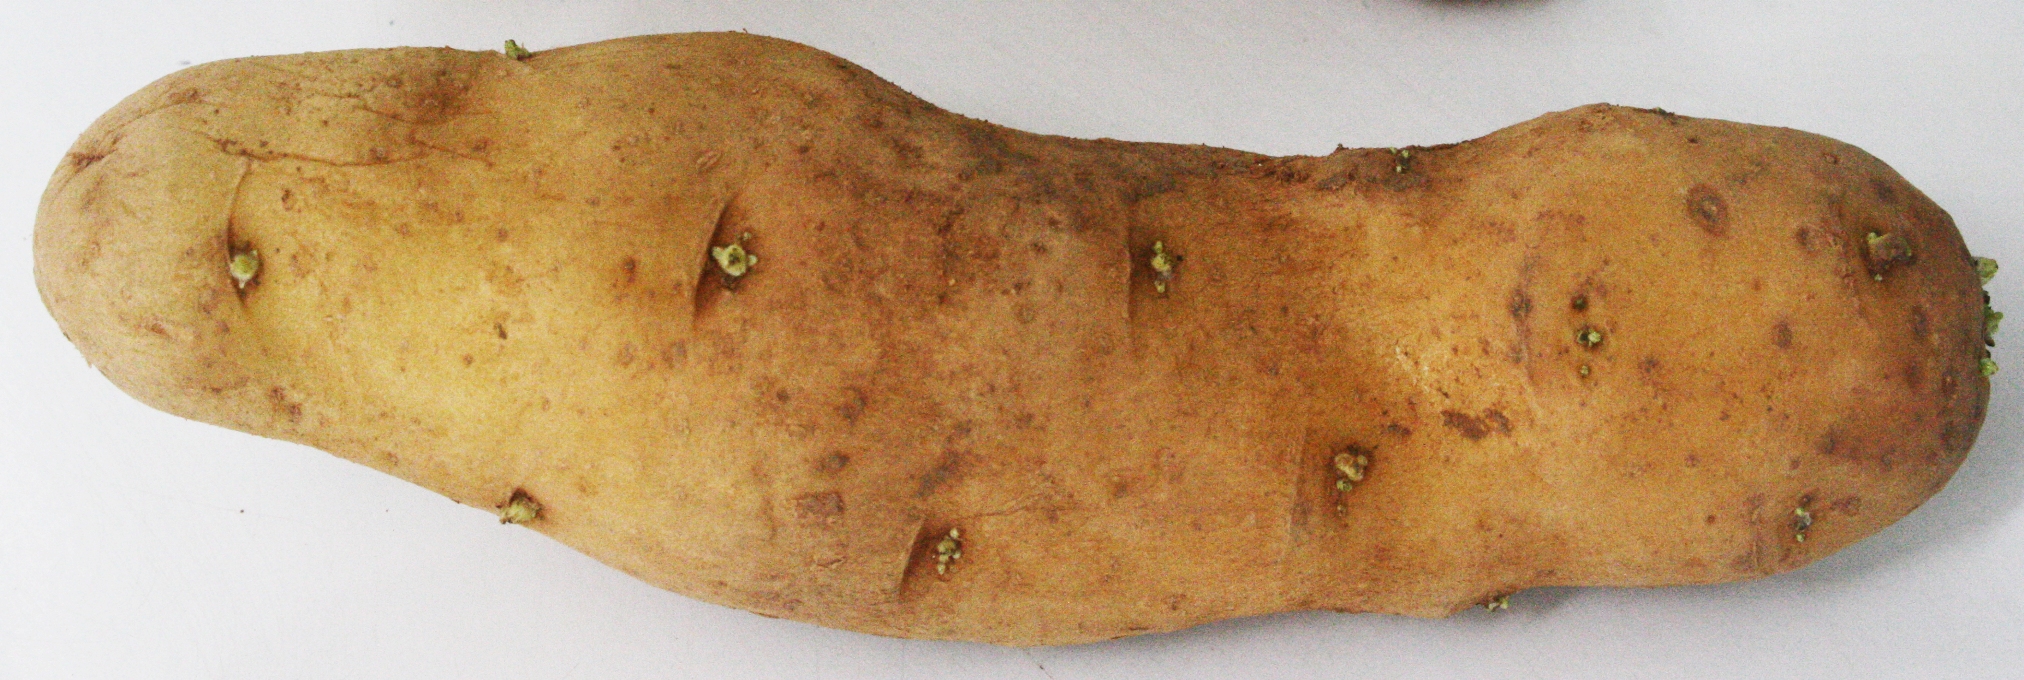 <p><b><p>Afilamento do tubérculo, em batata var. Ágata, infectada pelo <em>Potato spinder tuber viroid </em>(PSTVd).</p></b></p><p>Autor: Marcelo Eiras</p>